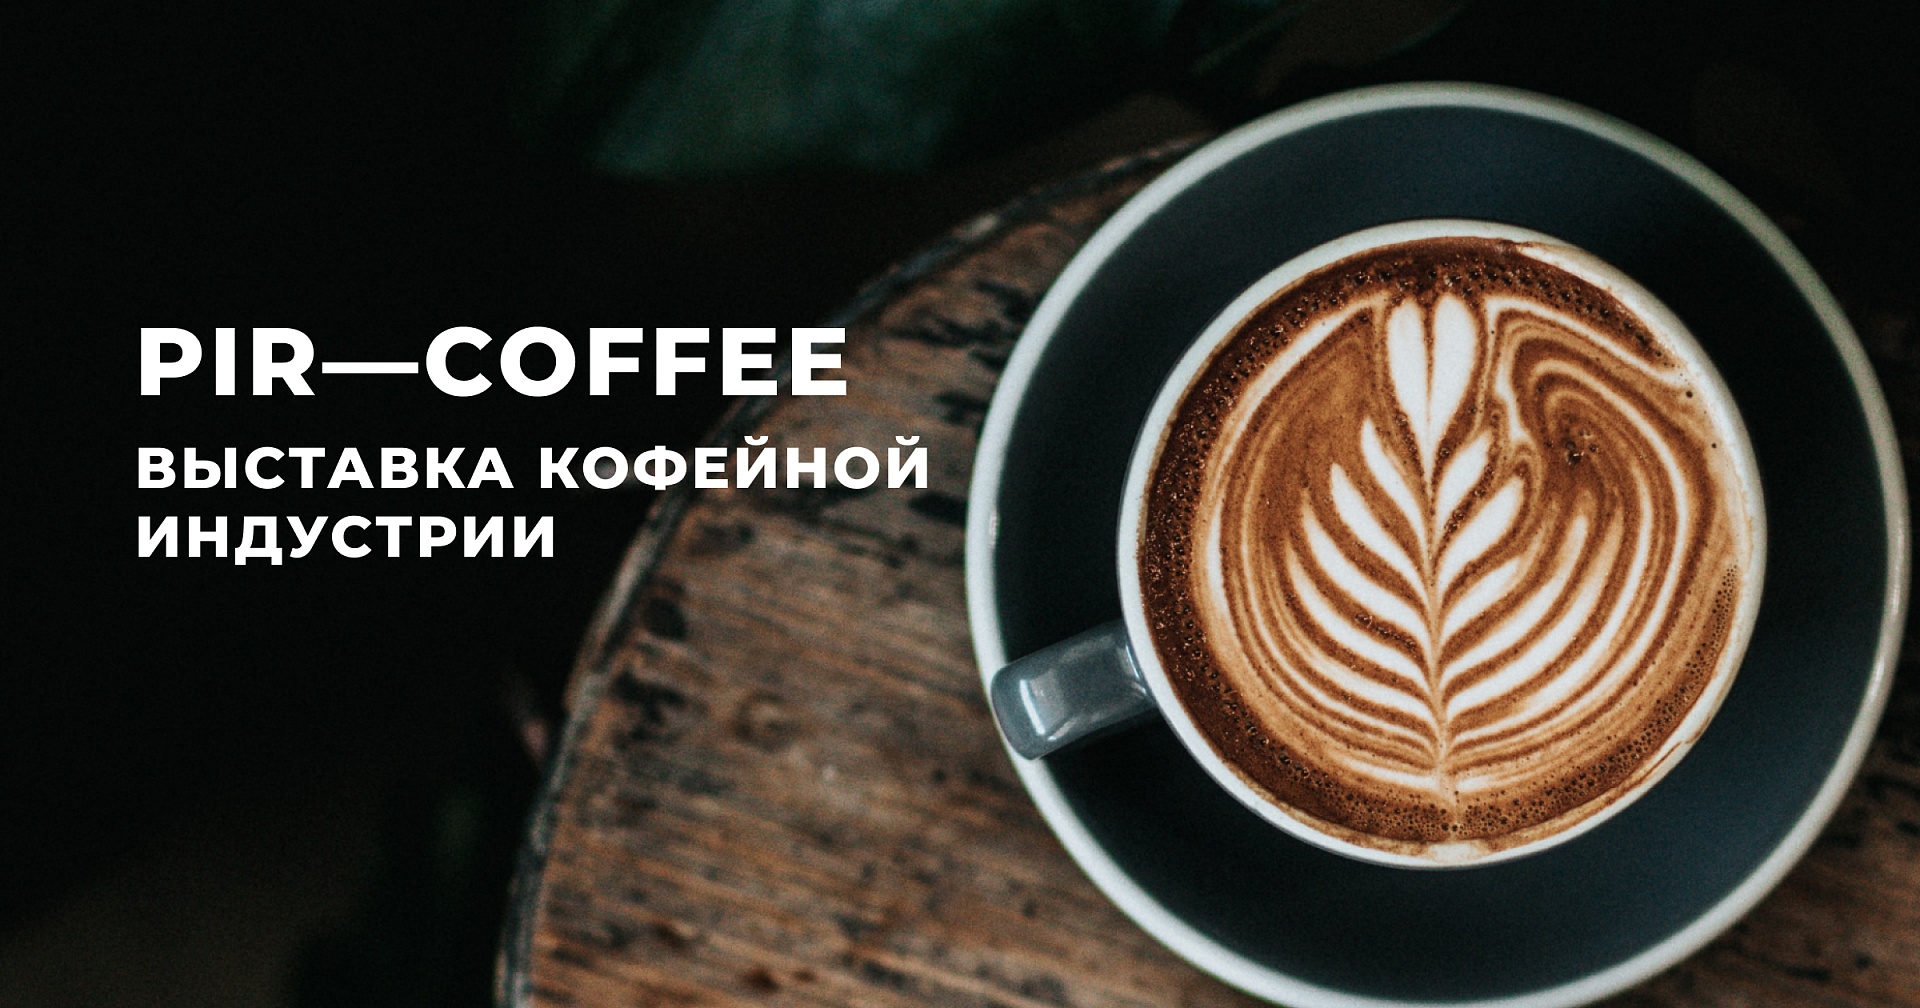 Масштабная выставка кофейной индустрии PIR—COFFEE прошла в Москве